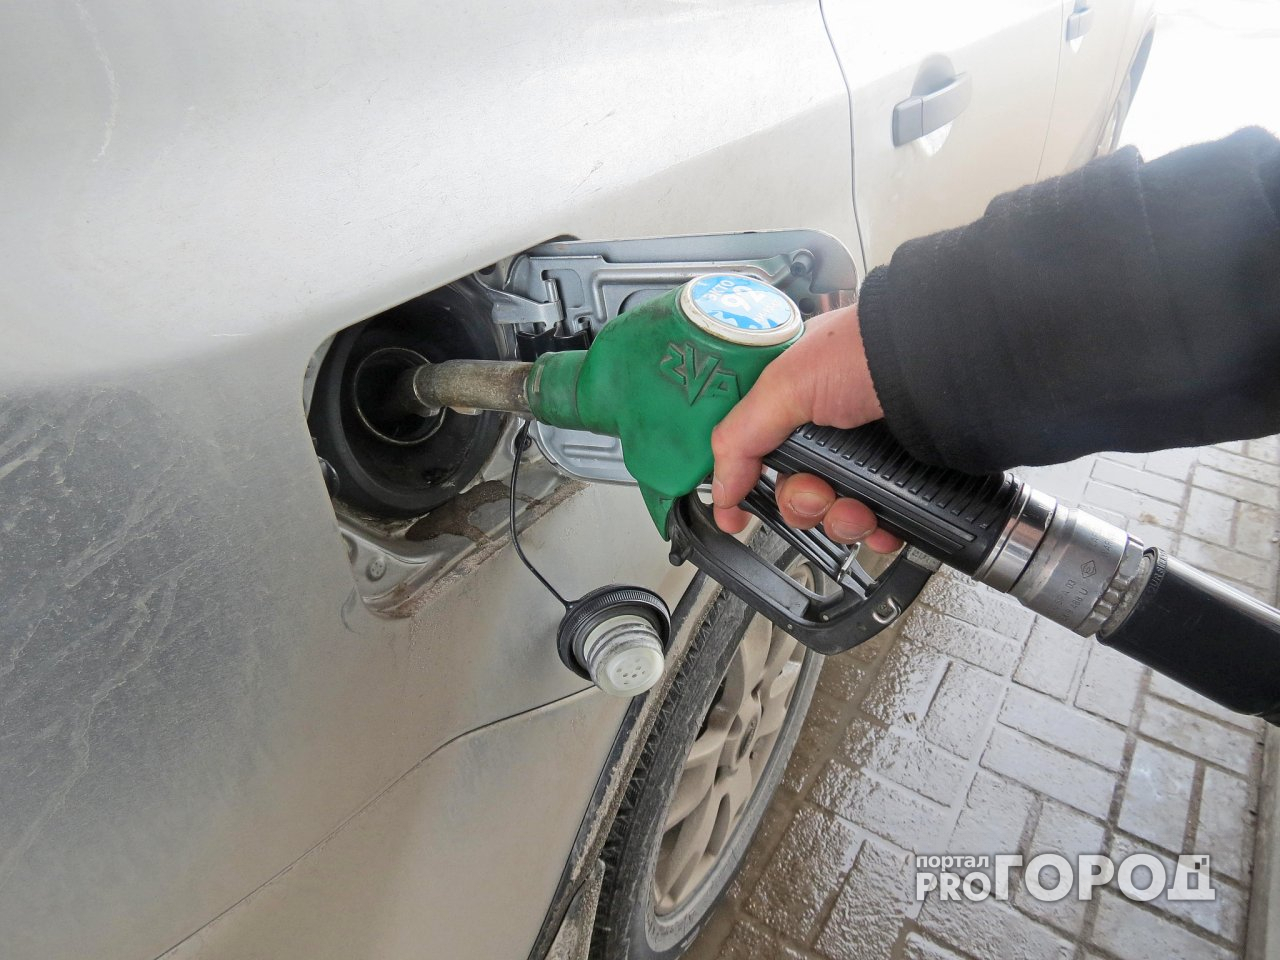 Стало известно, куда чепчане могут пожаловаться на рост цен на бензин